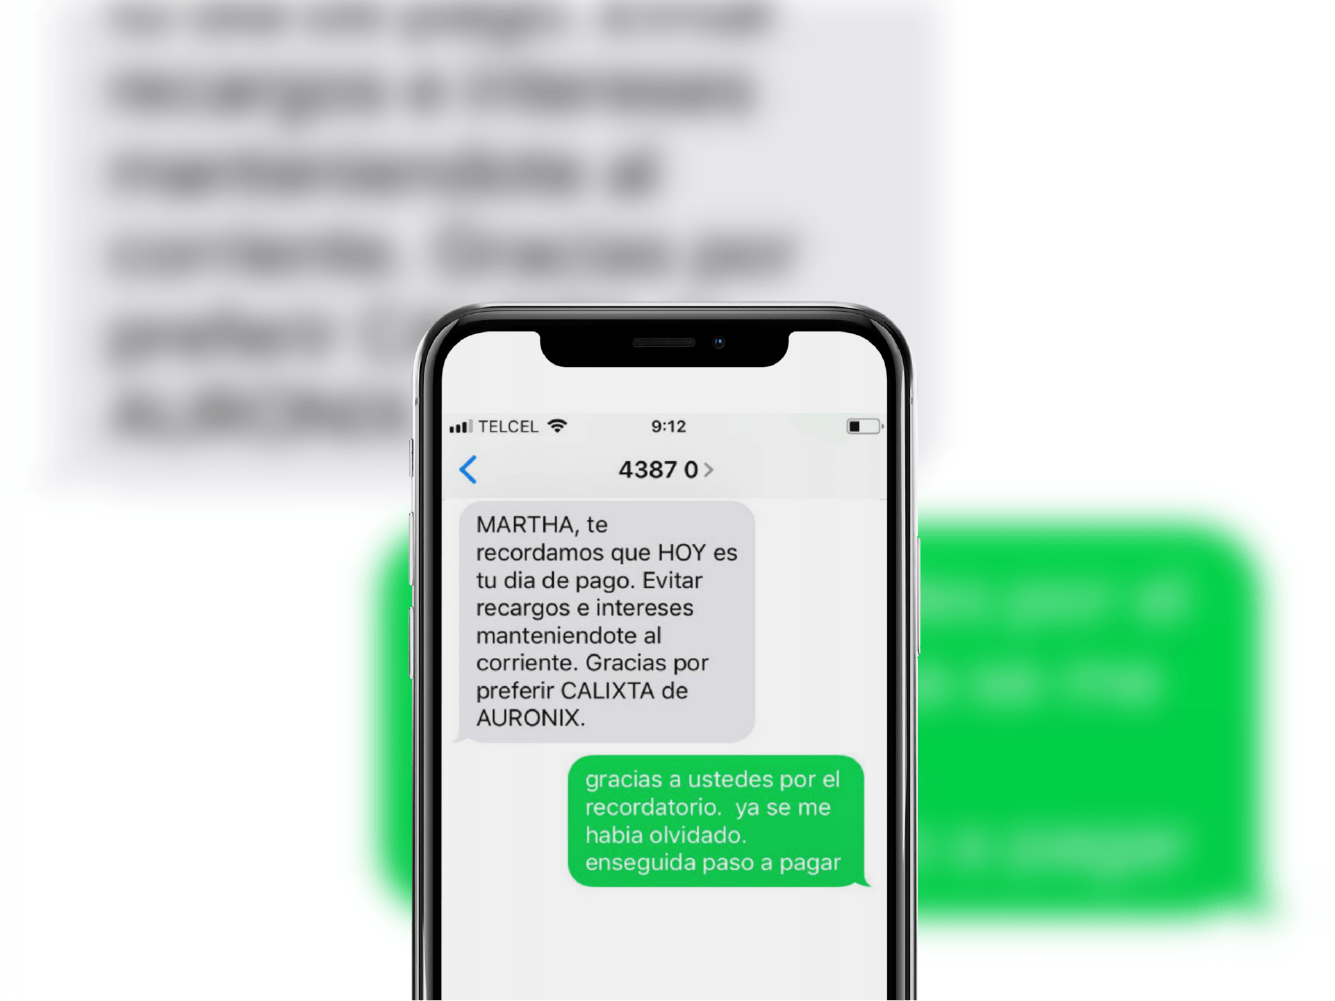 Cobranza via SMS con texto personalizado - Calixta de Auronix